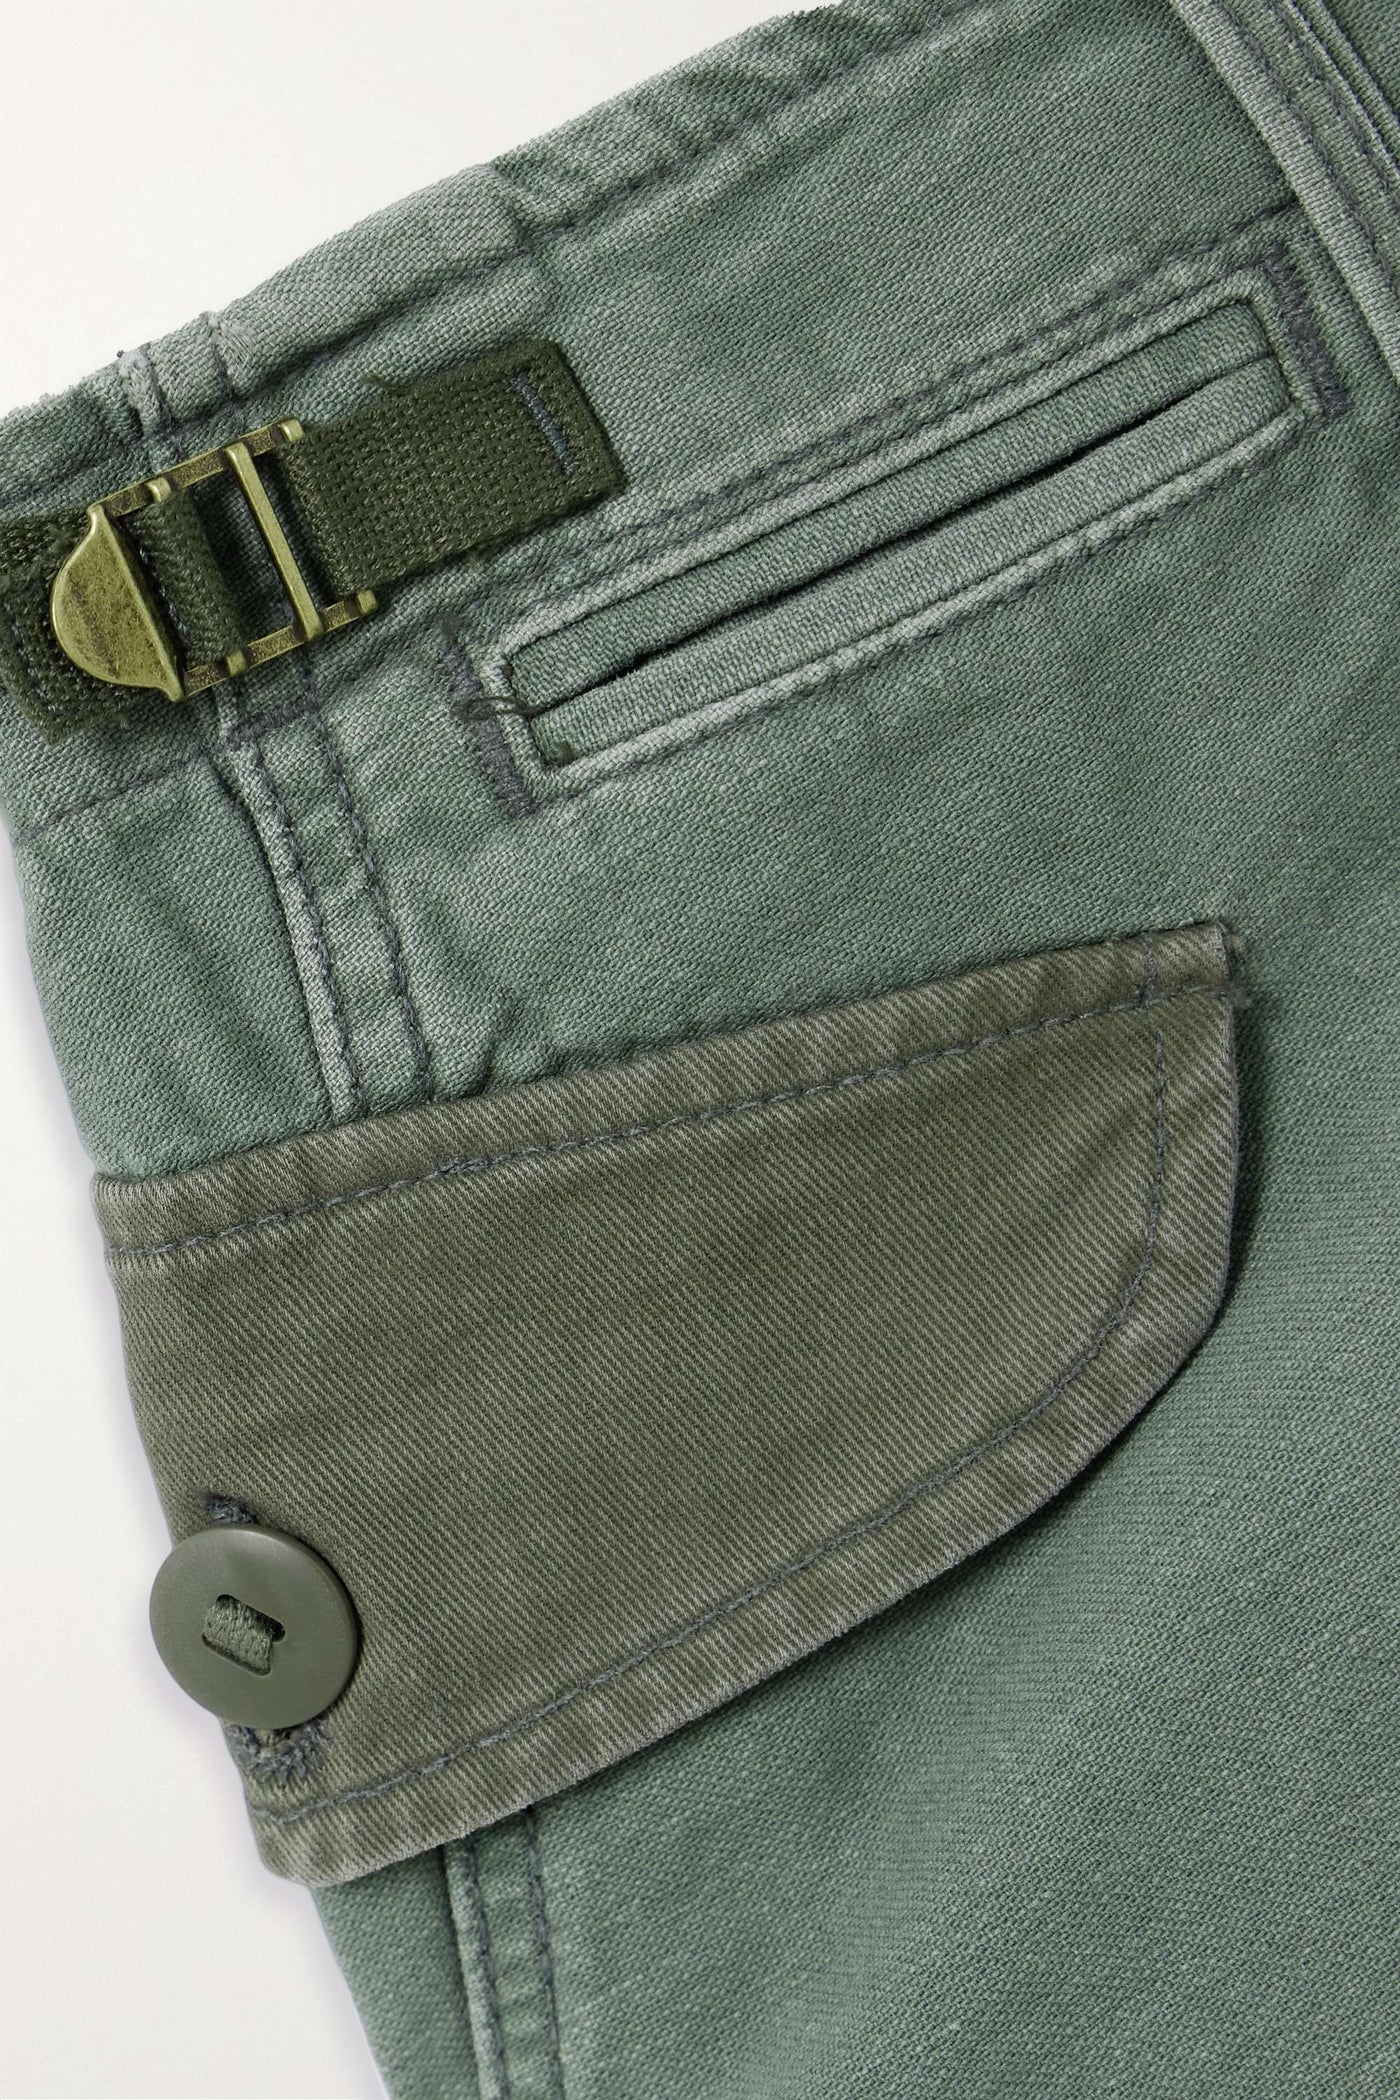 The G.I. Jane Mini Skirt - Army Green